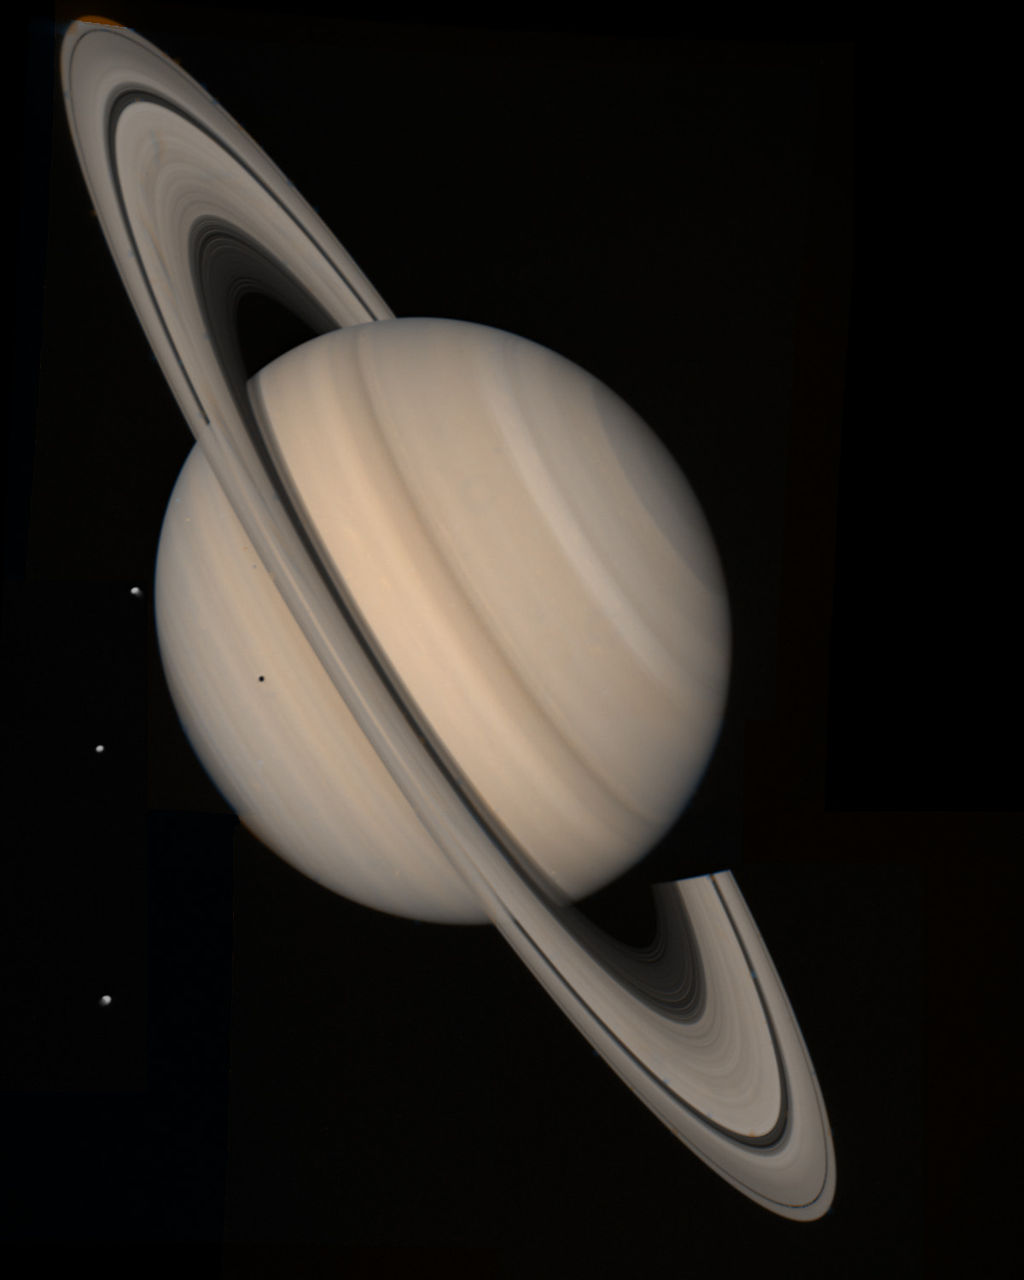 Image de la planète Saturne composée de photographies prises par la sonde Voyager 2